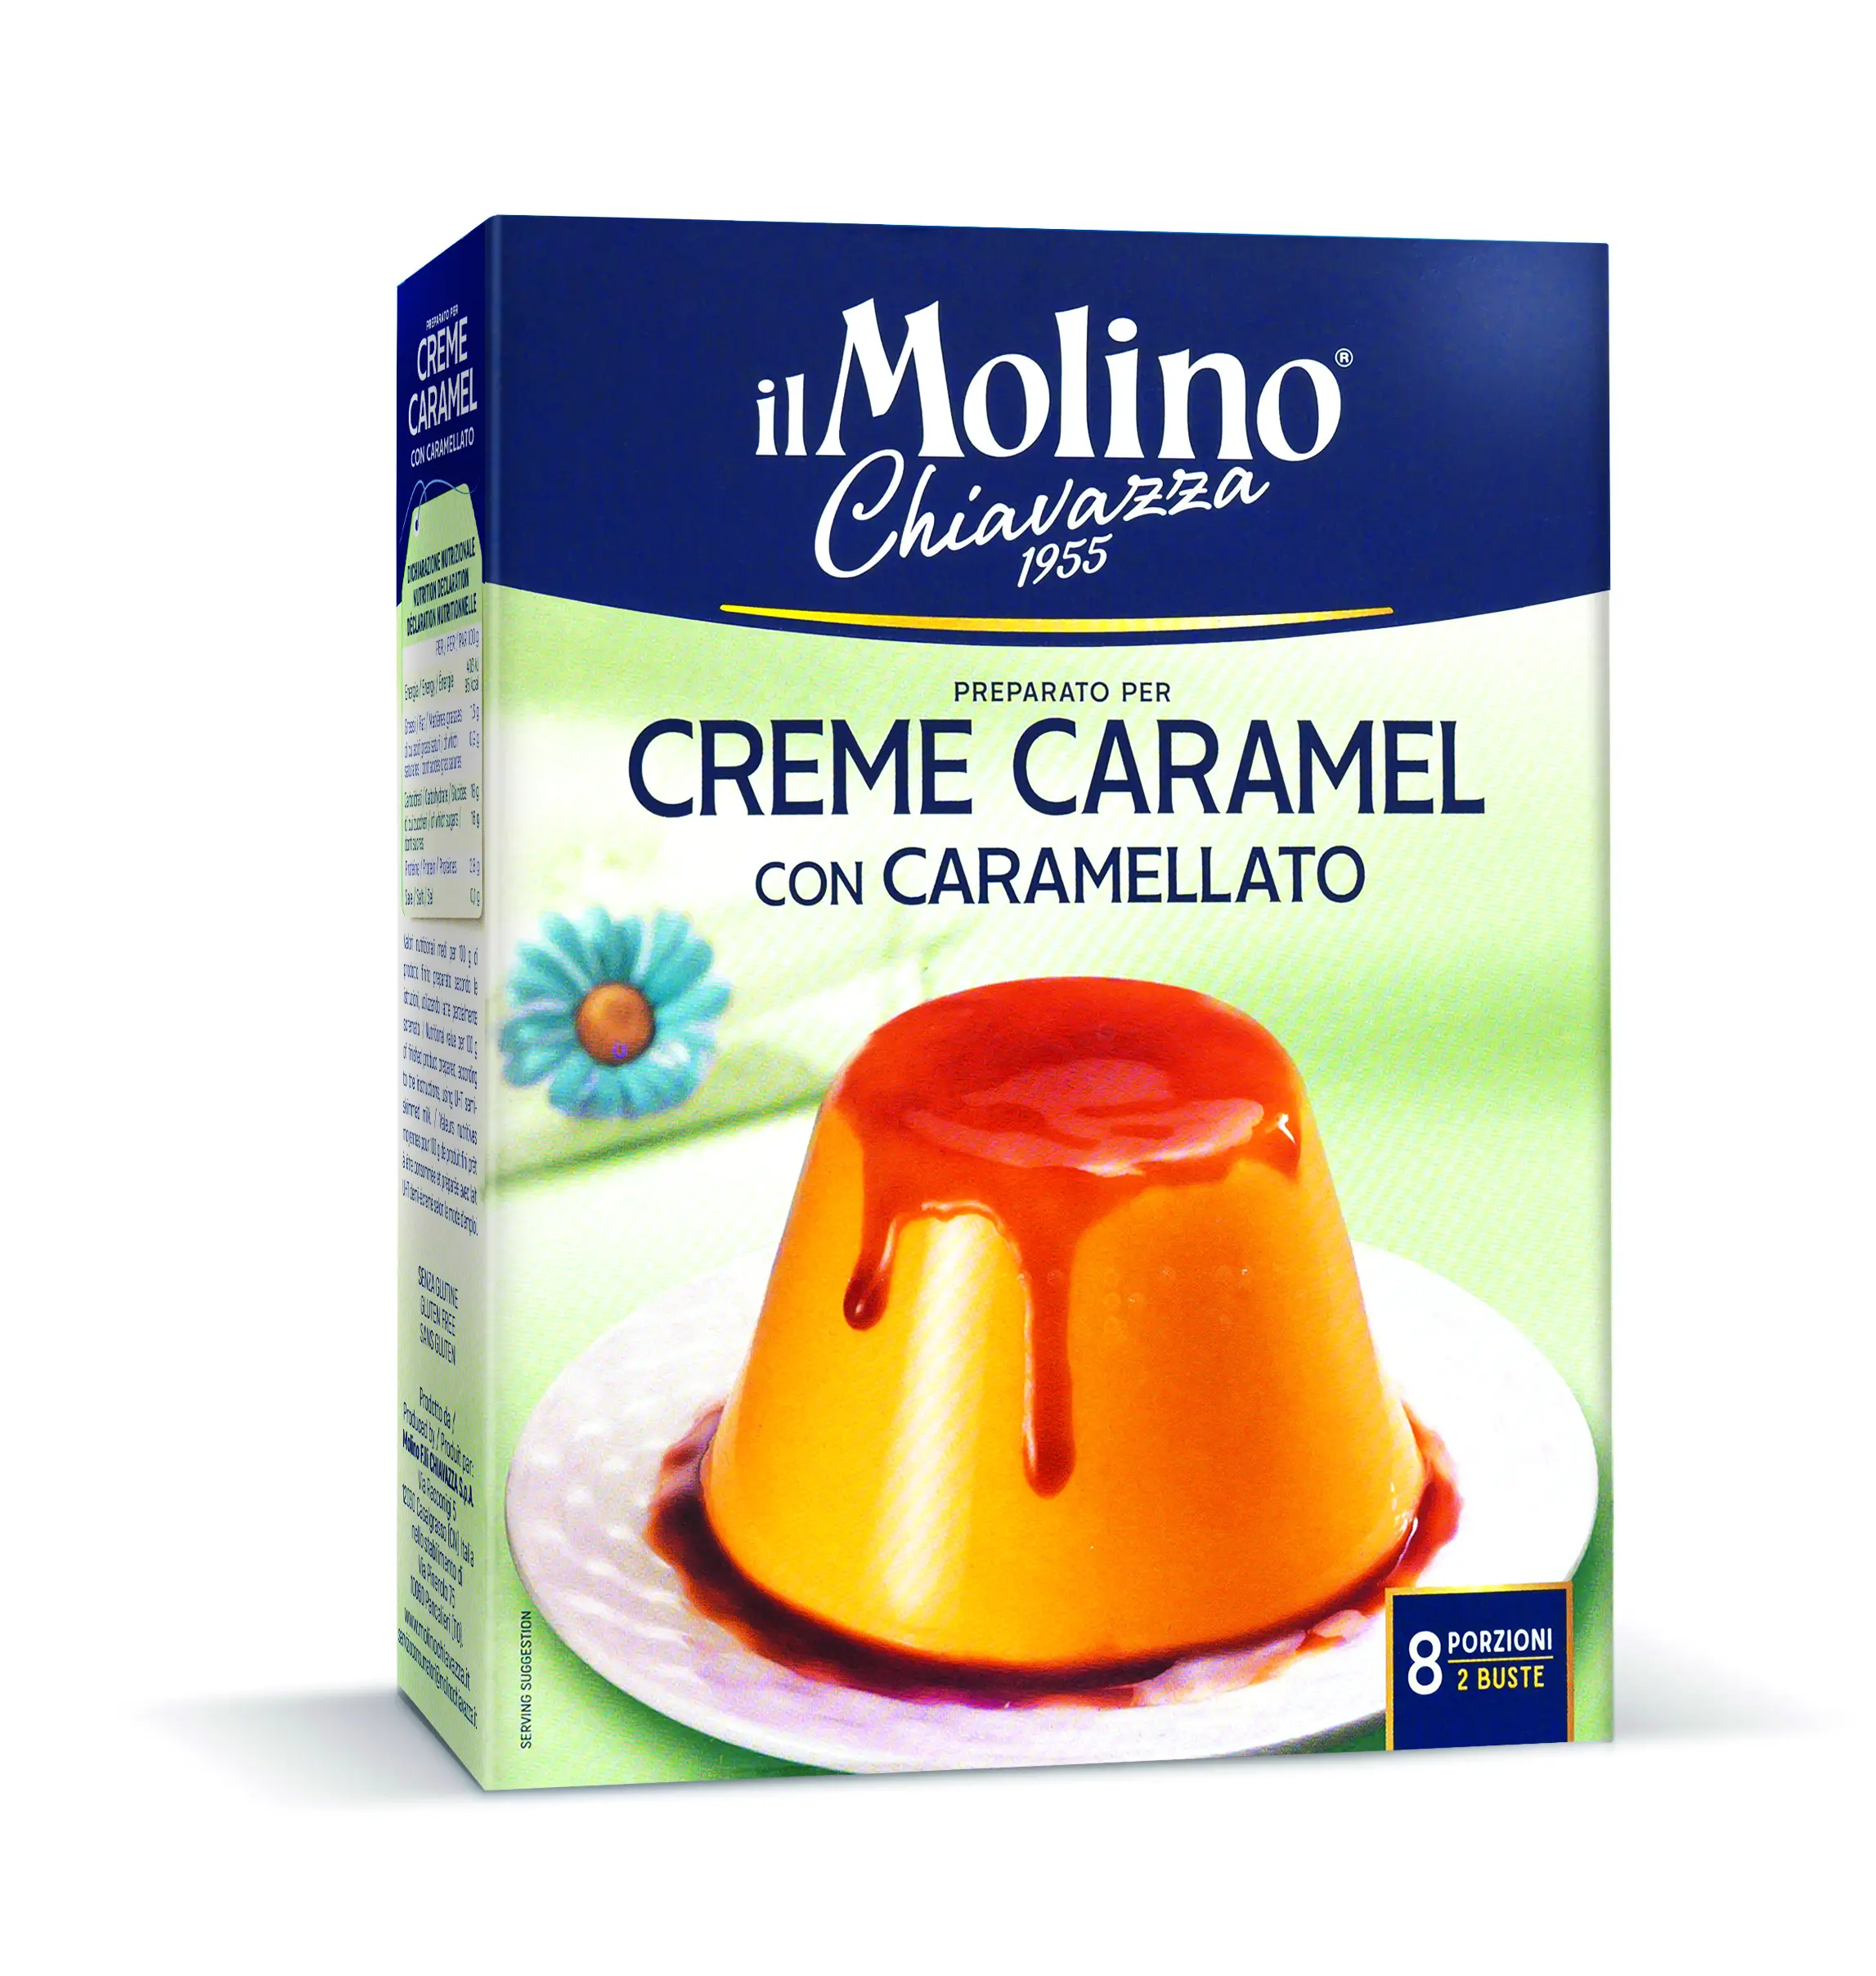 Yüksek kalite 100% doğal krem karamel İtalya'da yapılan birkaç ve profesyonel kullanımlar için Ideal nakliye için hazır